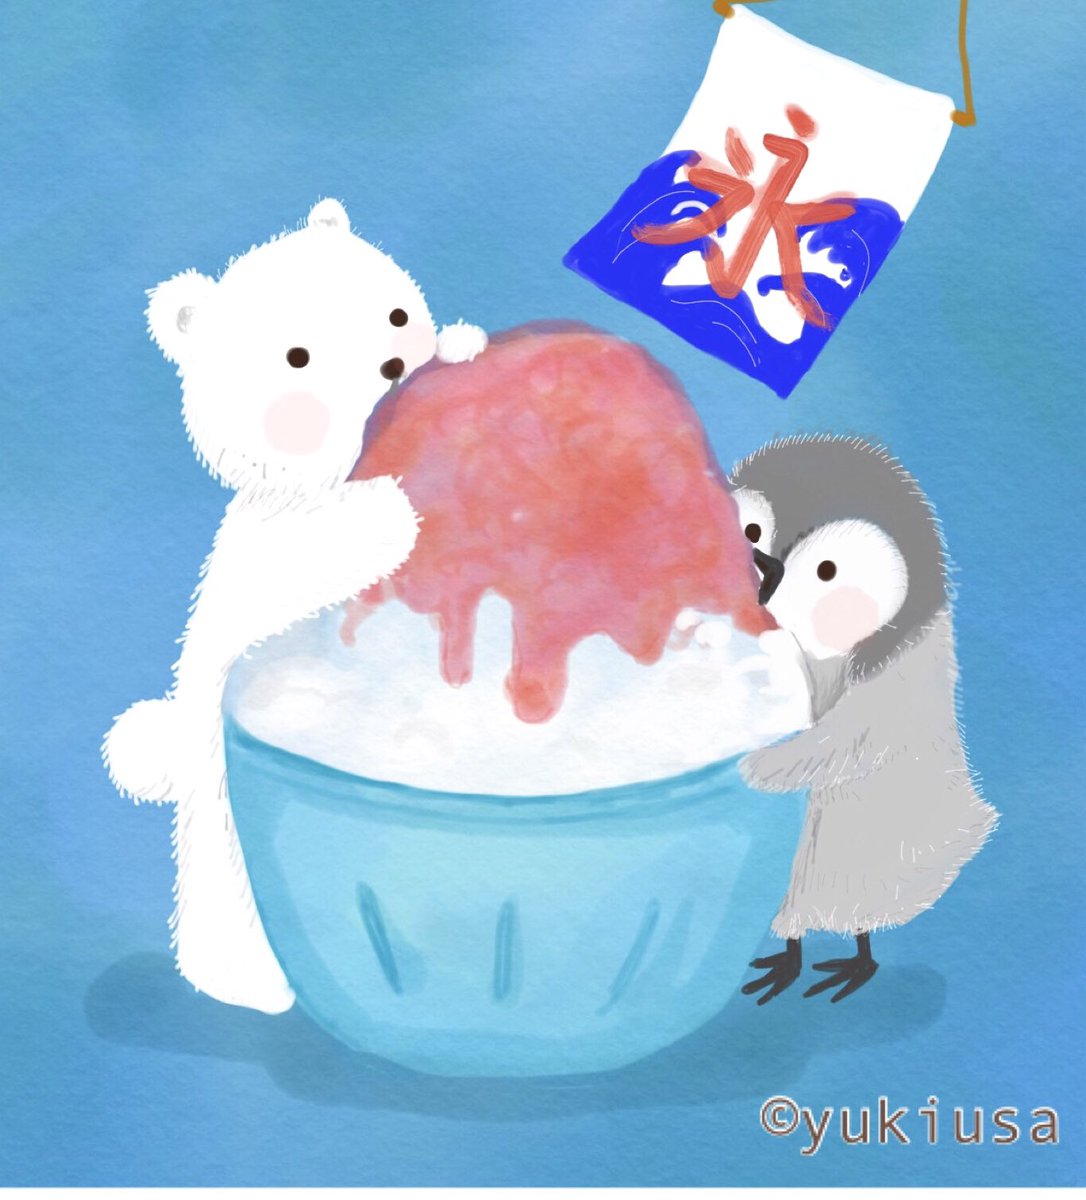 ゆきうさ イラスト えほん 在 Twitter 上 お客様 お待たせいたしました いちごかき氷です 暑いので 味見させてくれますか ʕ ᴥ ʔ イラスト かき氷 しろくま ペンギン Illustration Illustrator Penguin Polarbear T Co Rs5ufrhmoq Twitter